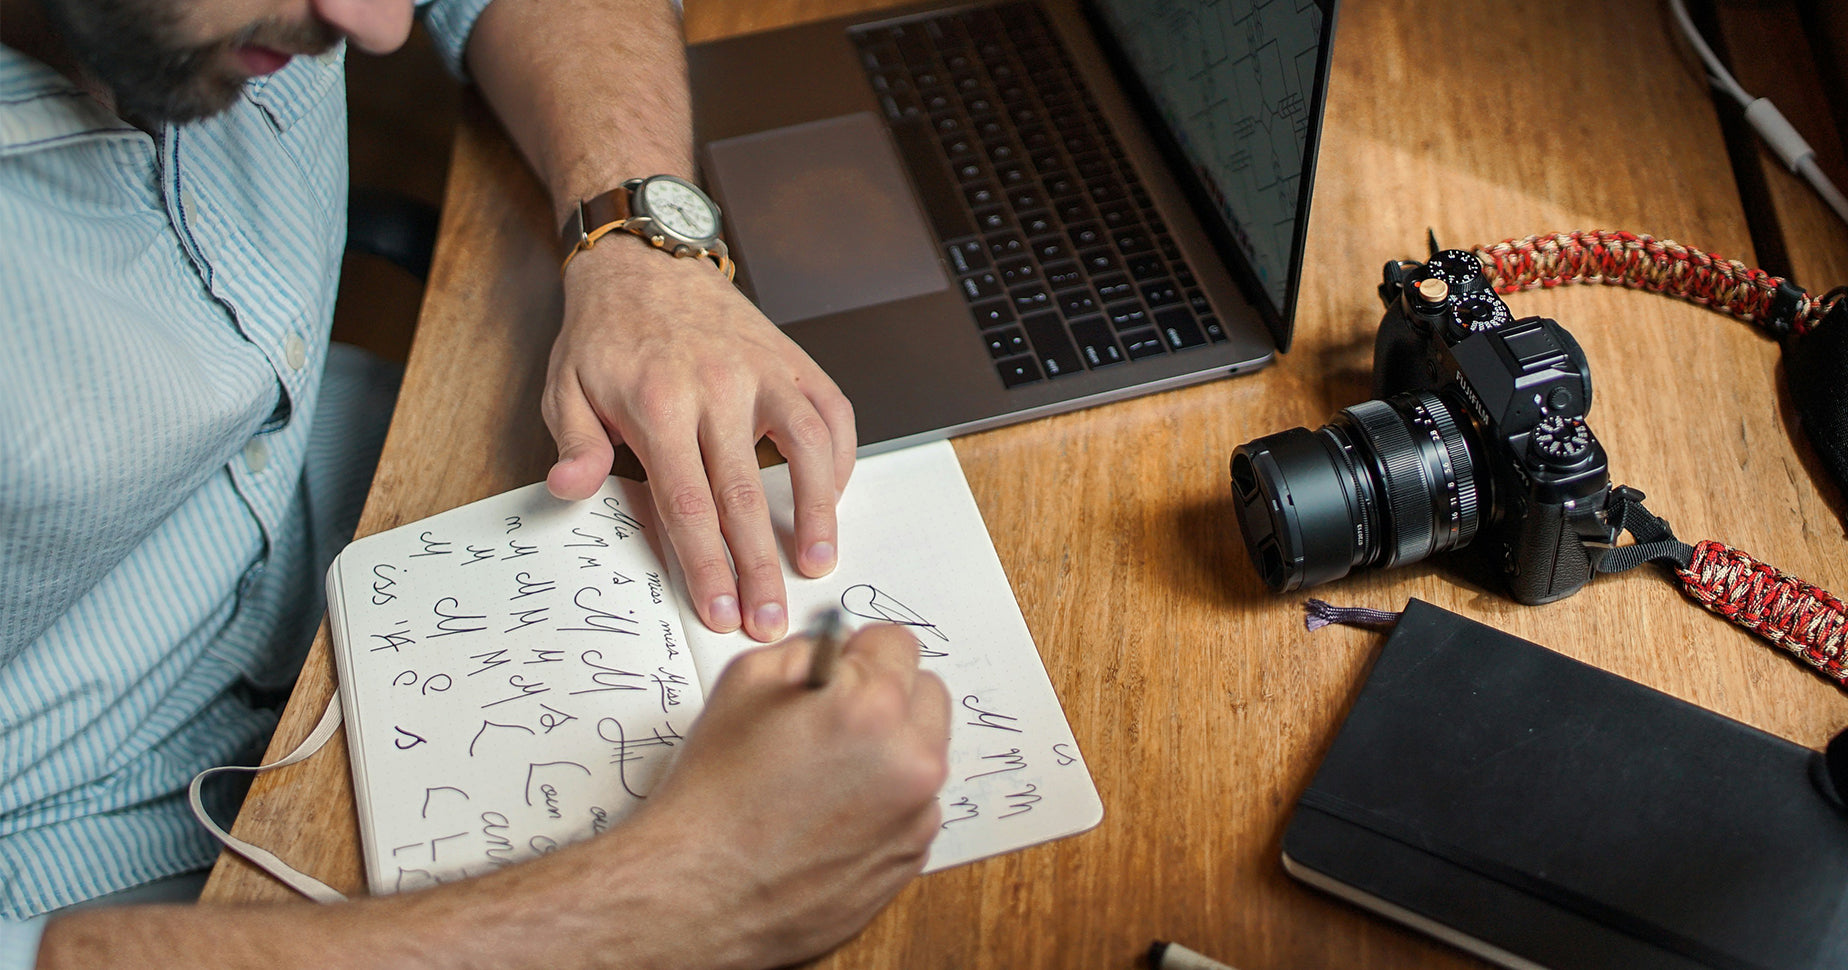 Ein Mann skizziert in ein Notizbuch verschiedene Logos. Vor ihm liegt eine Kamera und ein  Laptop.